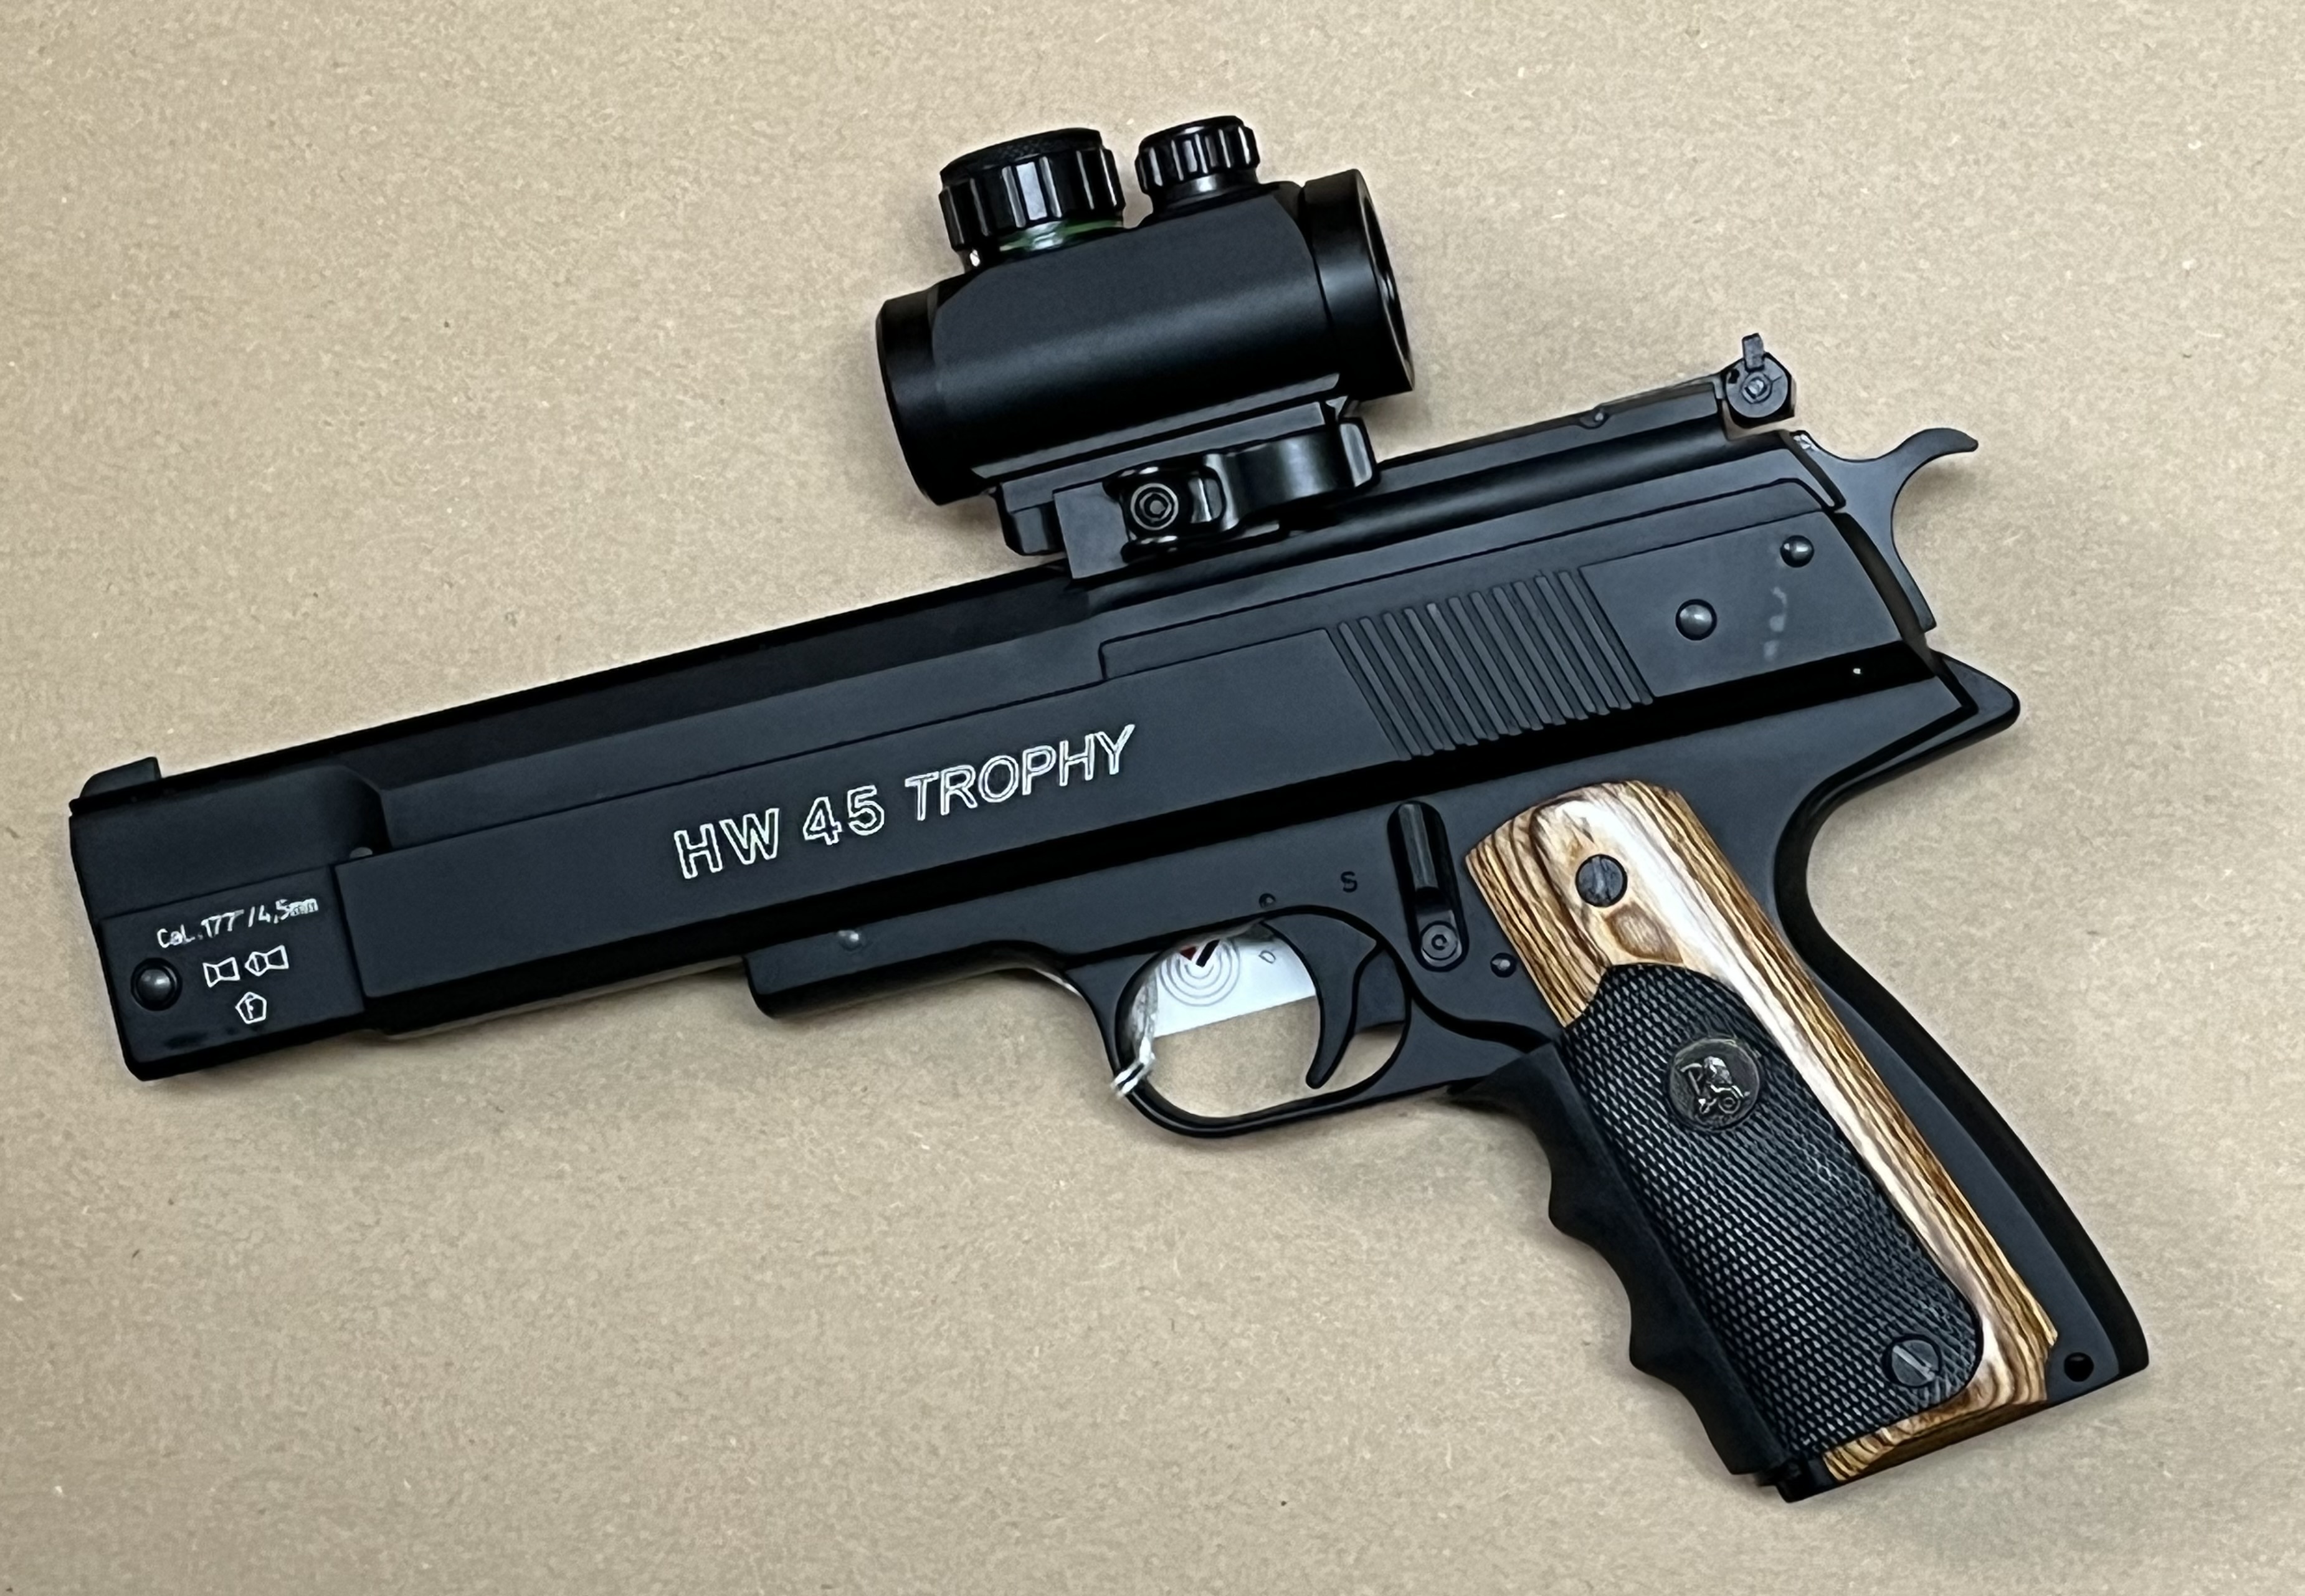 Luftpistole HW 45 Trophy Kaliber 4,5mm